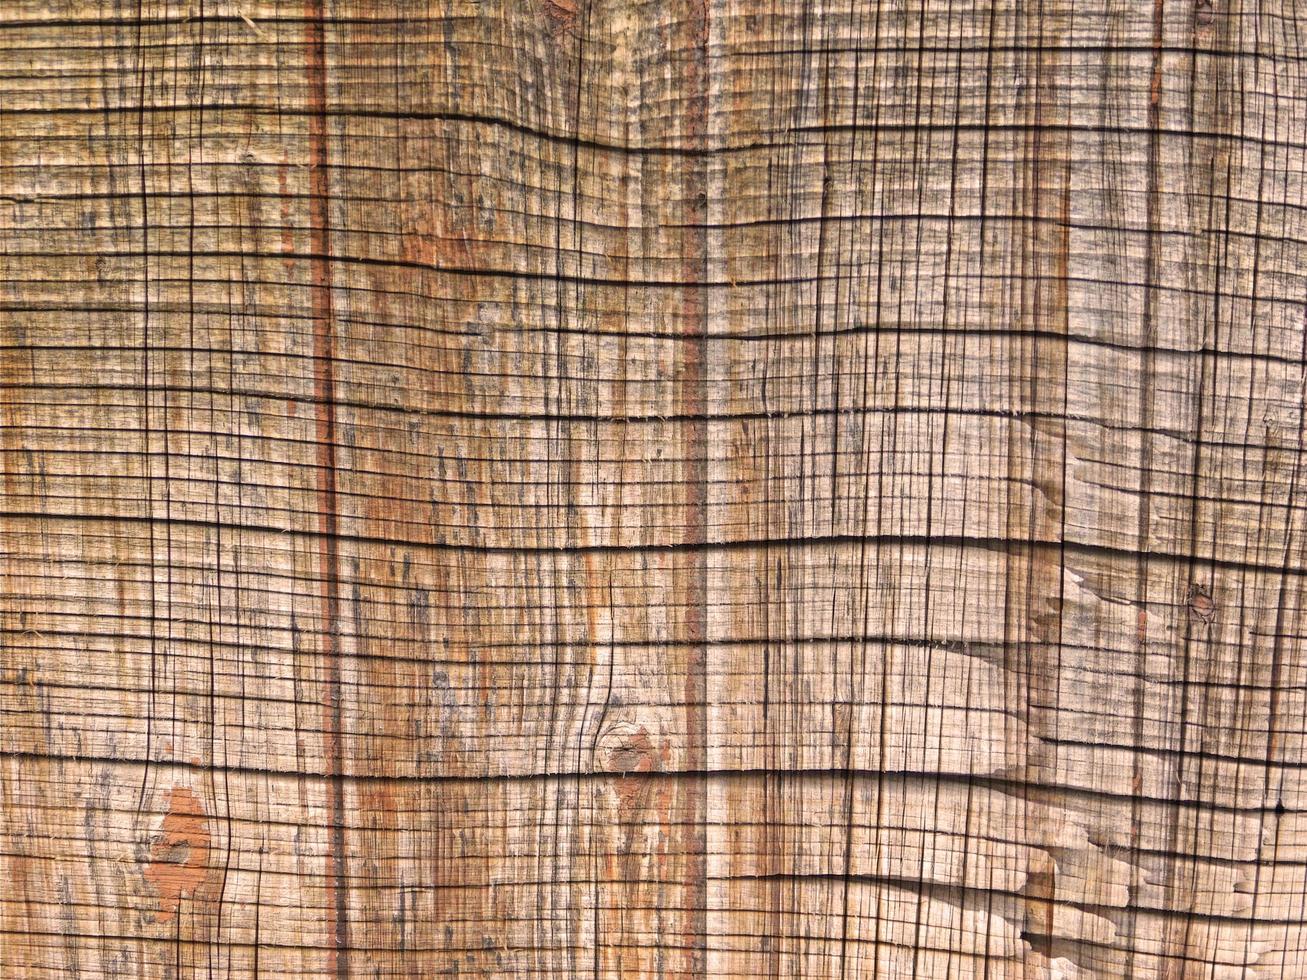 close-up de painel de madeira para plano de fundo ou textura foto